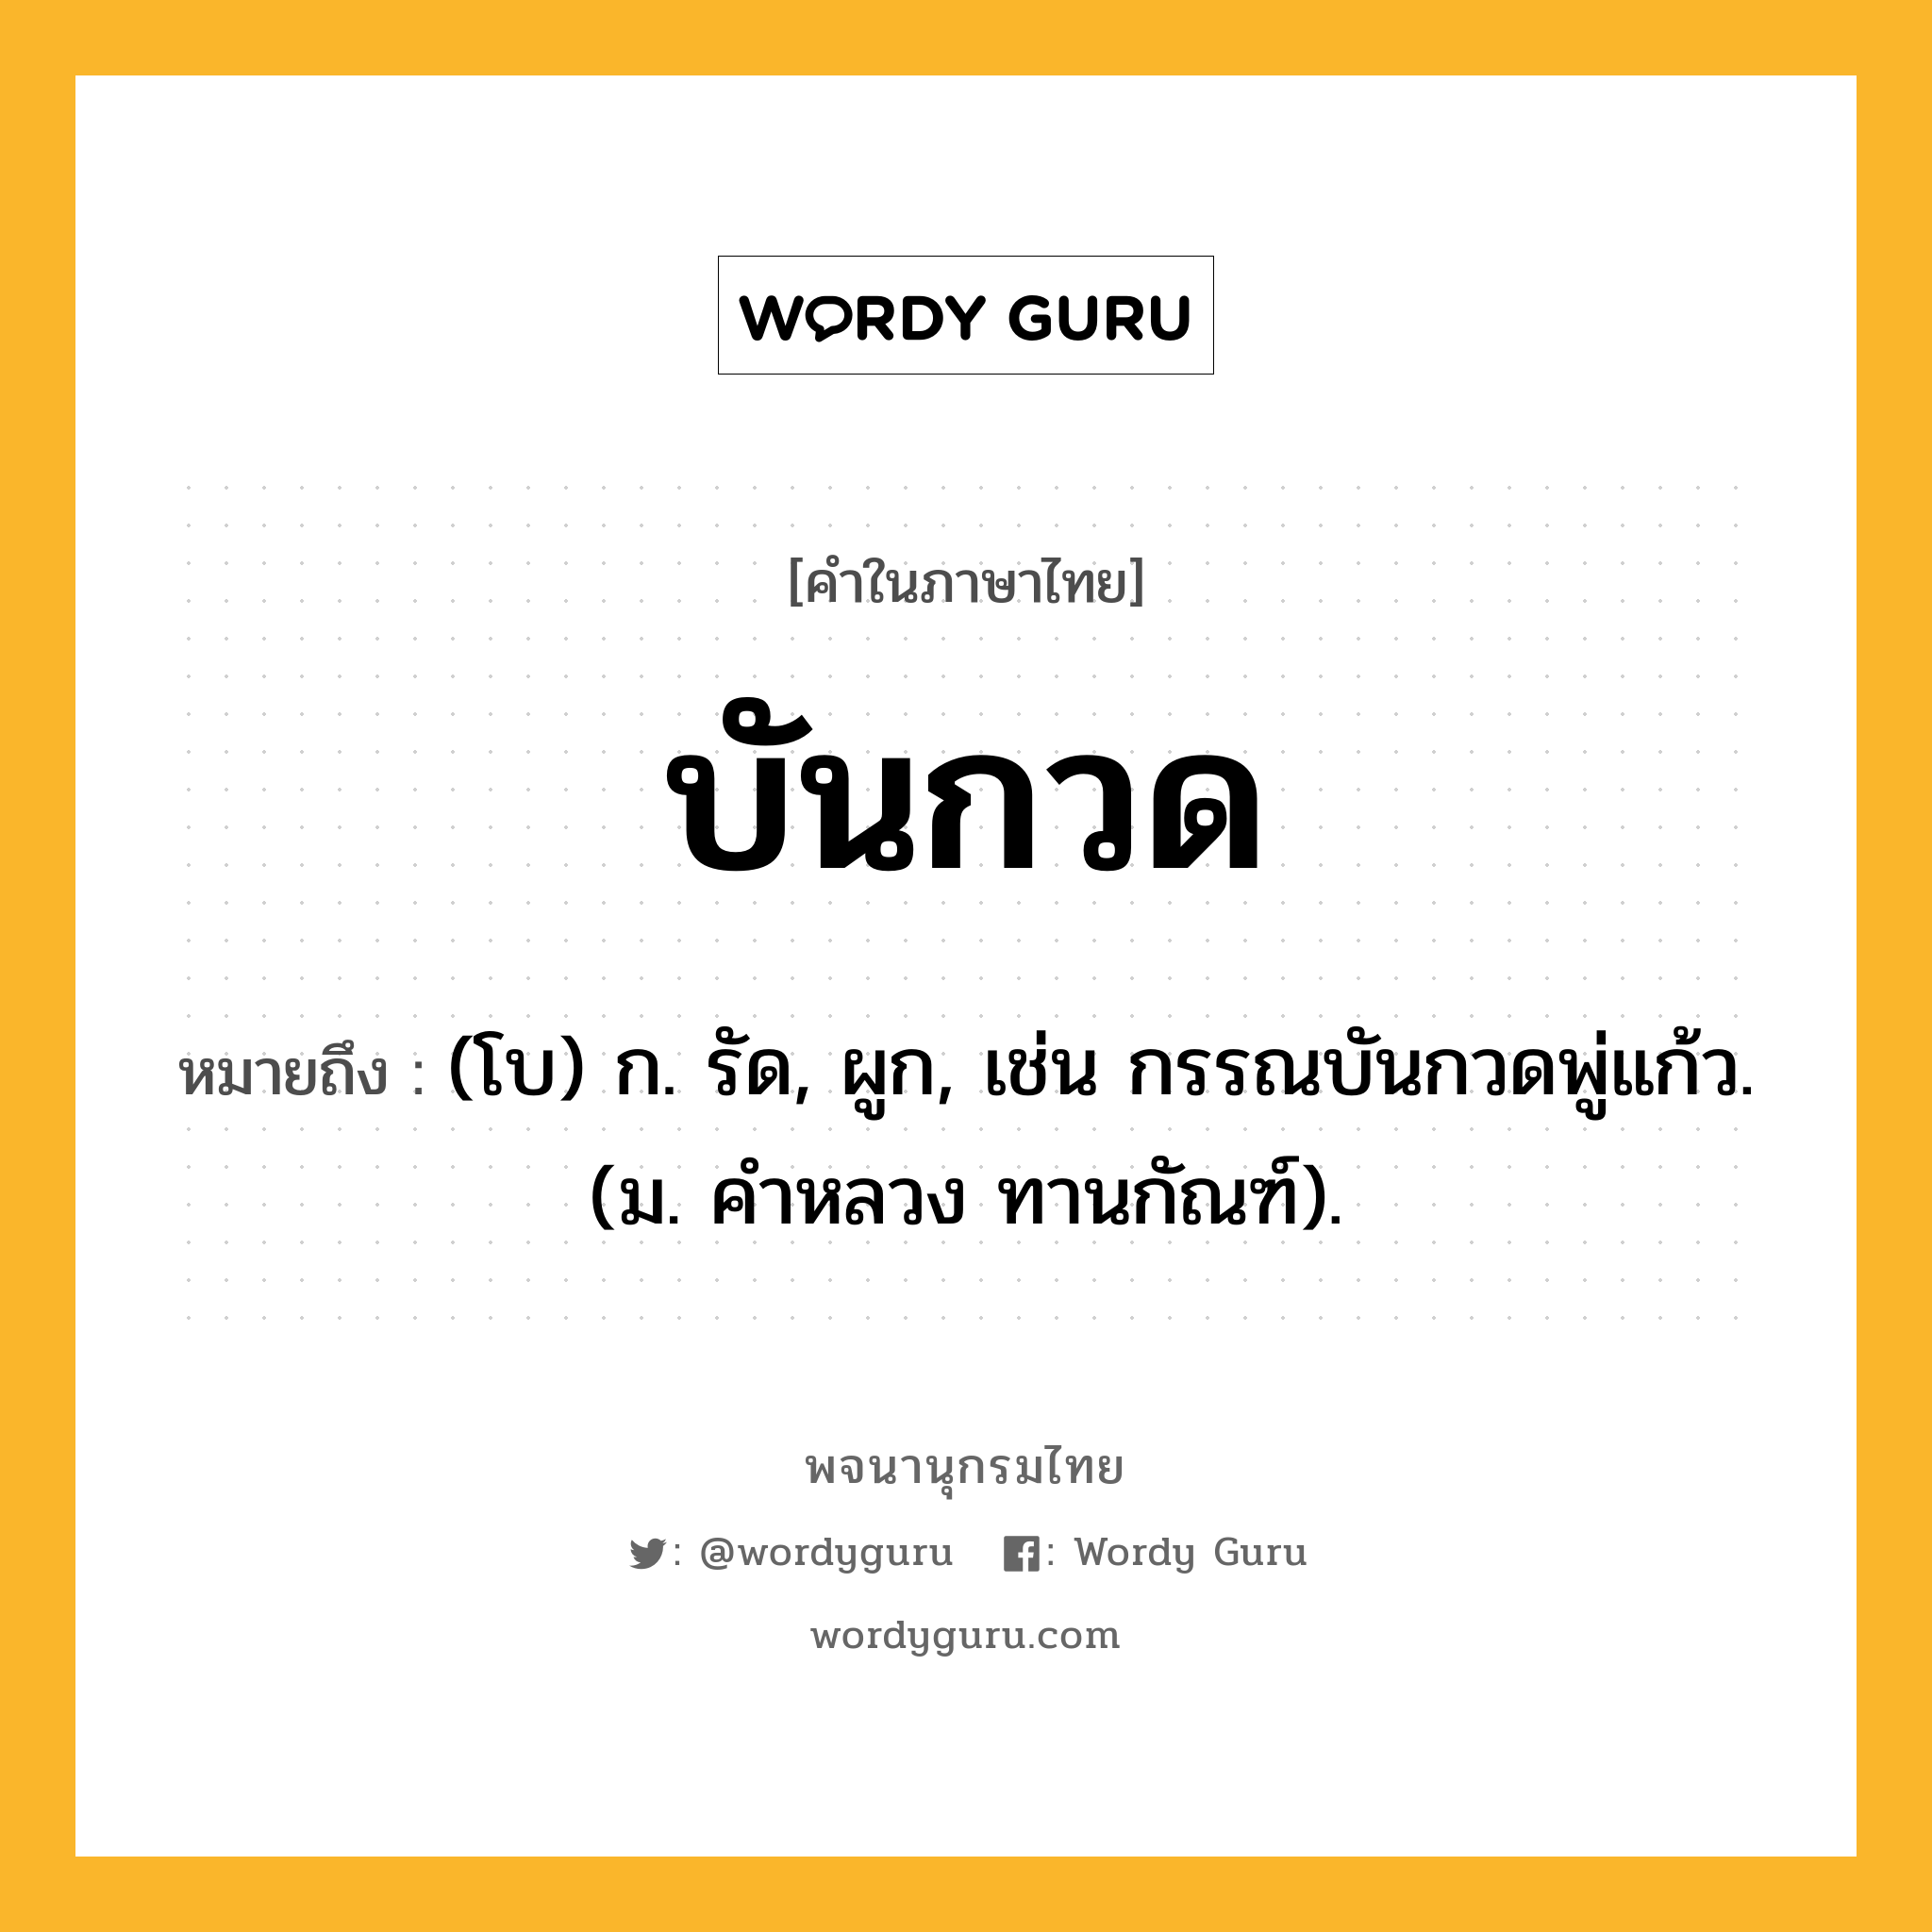 บันกวด หมายถึงอะไร?, คำในภาษาไทย บันกวด หมายถึง (โบ) ก. รัด, ผูก, เช่น กรรณบันกวดพู่แก้ว. (ม. คําหลวง ทานกัณฑ์).